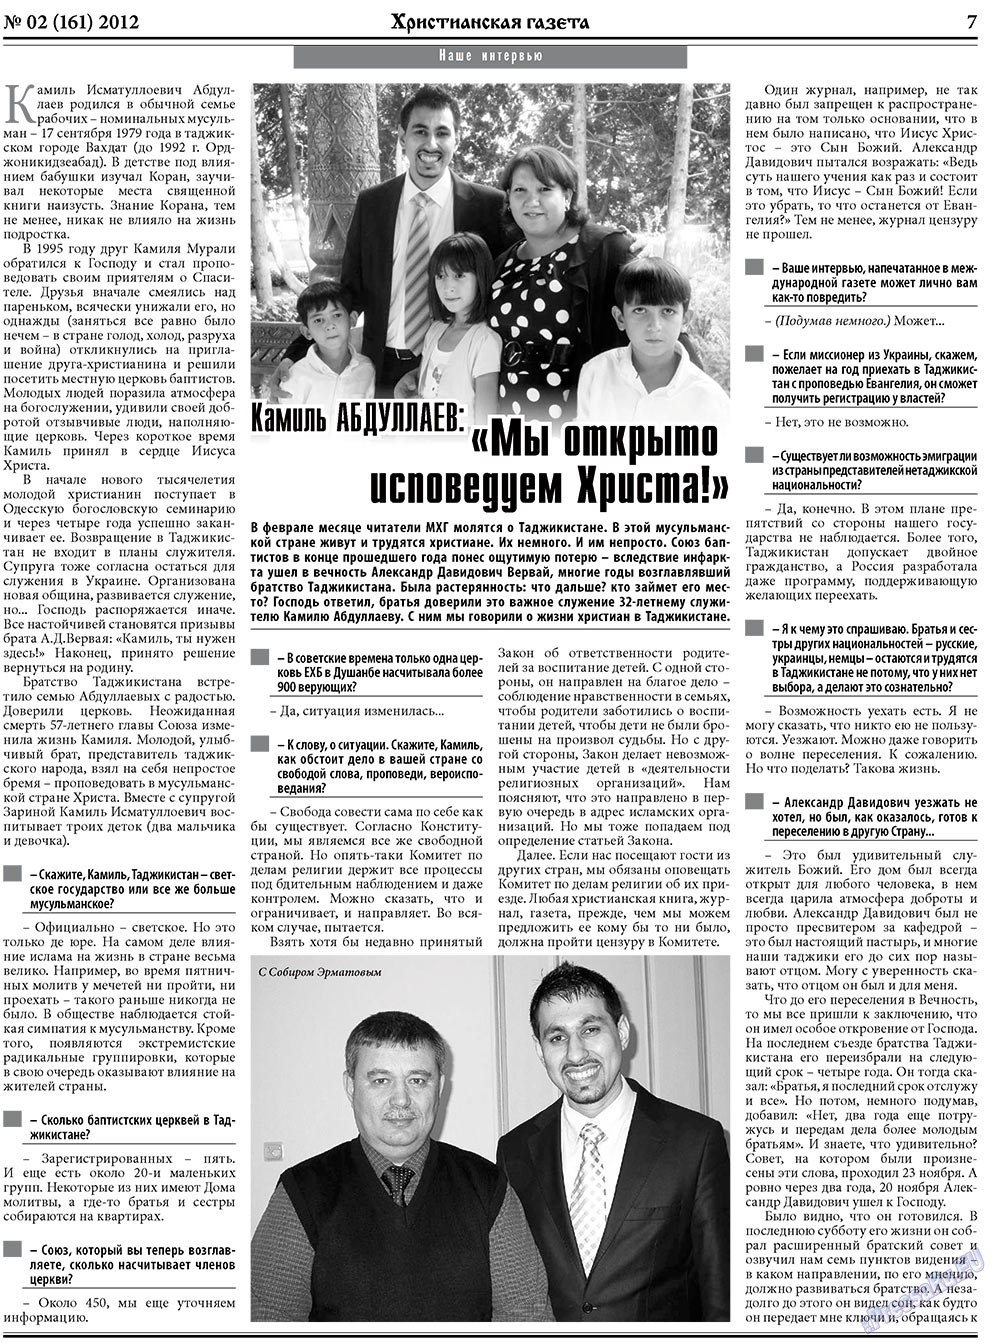 Христианская газета, газета. 2012 №2 стр.7